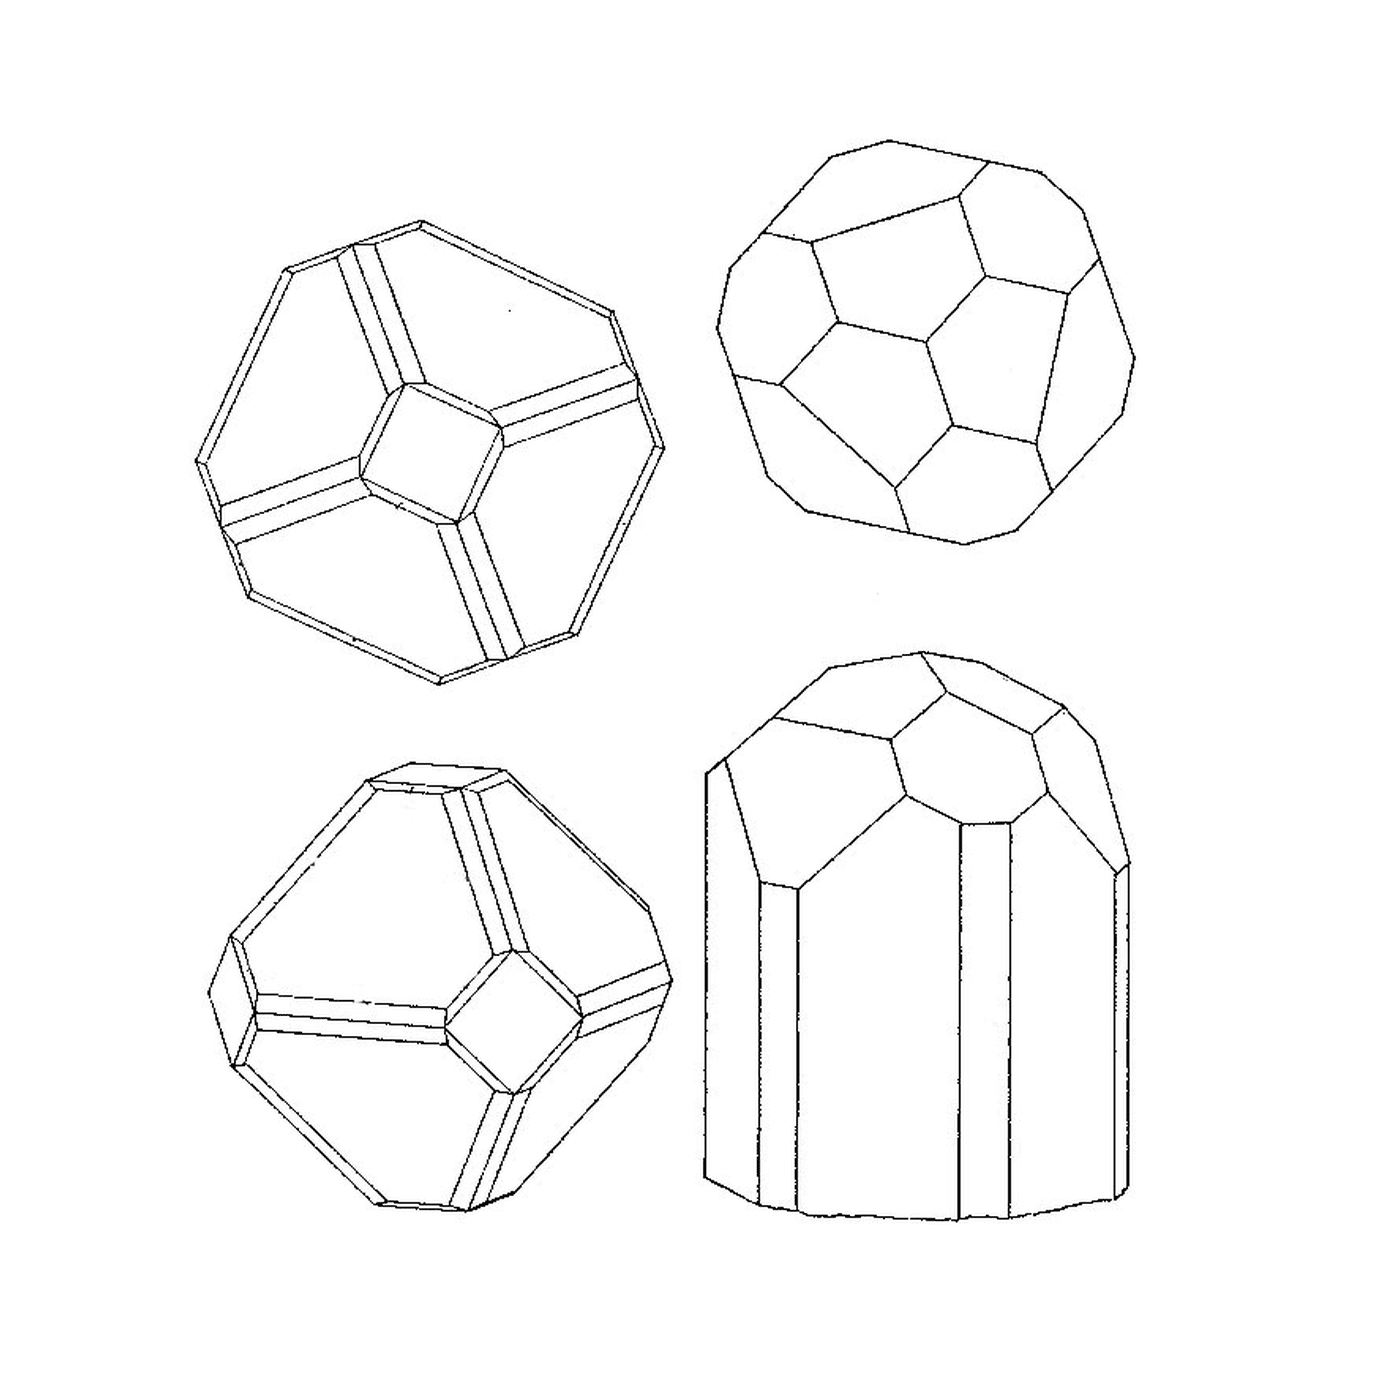  Vier verschiedene geometrische Formen 